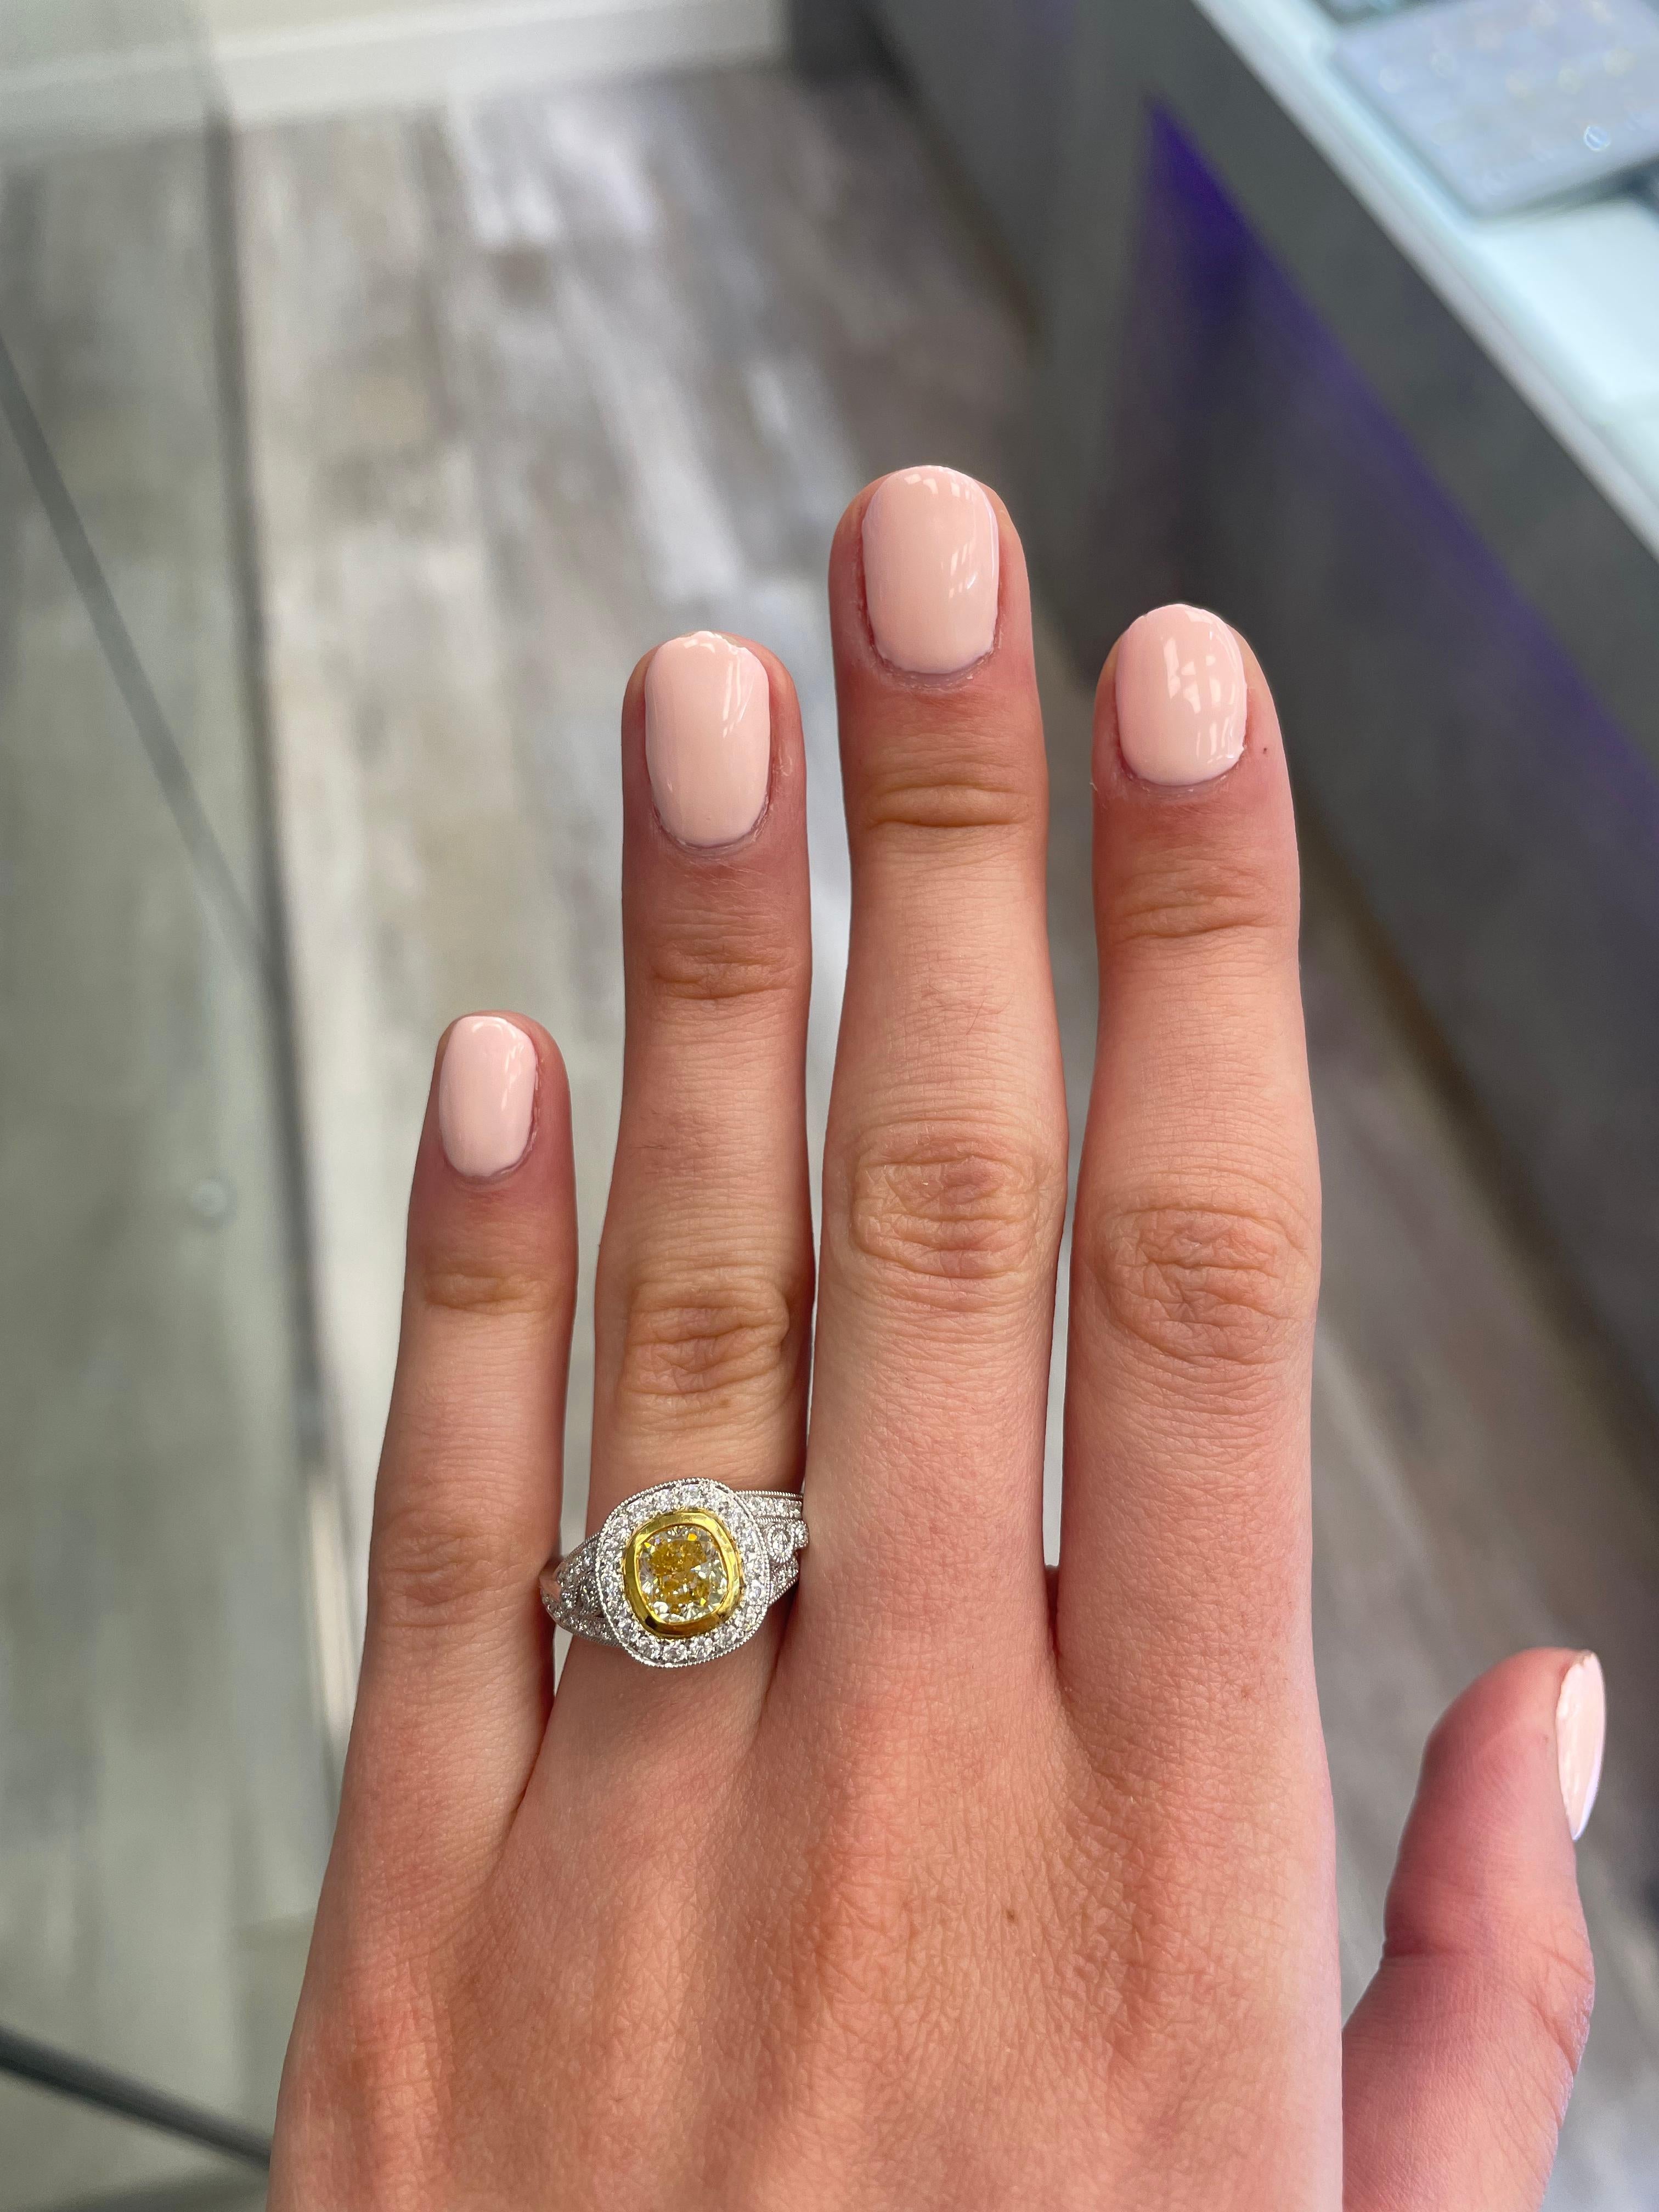 Superbe bague moderne en diamant jaune certifié EGL avec halo, en or jaune et blanc 18k bicolore. Par Alexander Beverly Hills
Poids total des diamants : 2,36 carats.
Diamant coussin de 1,31 carat de couleur Fancy Intense Yellow et de pureté SI2,